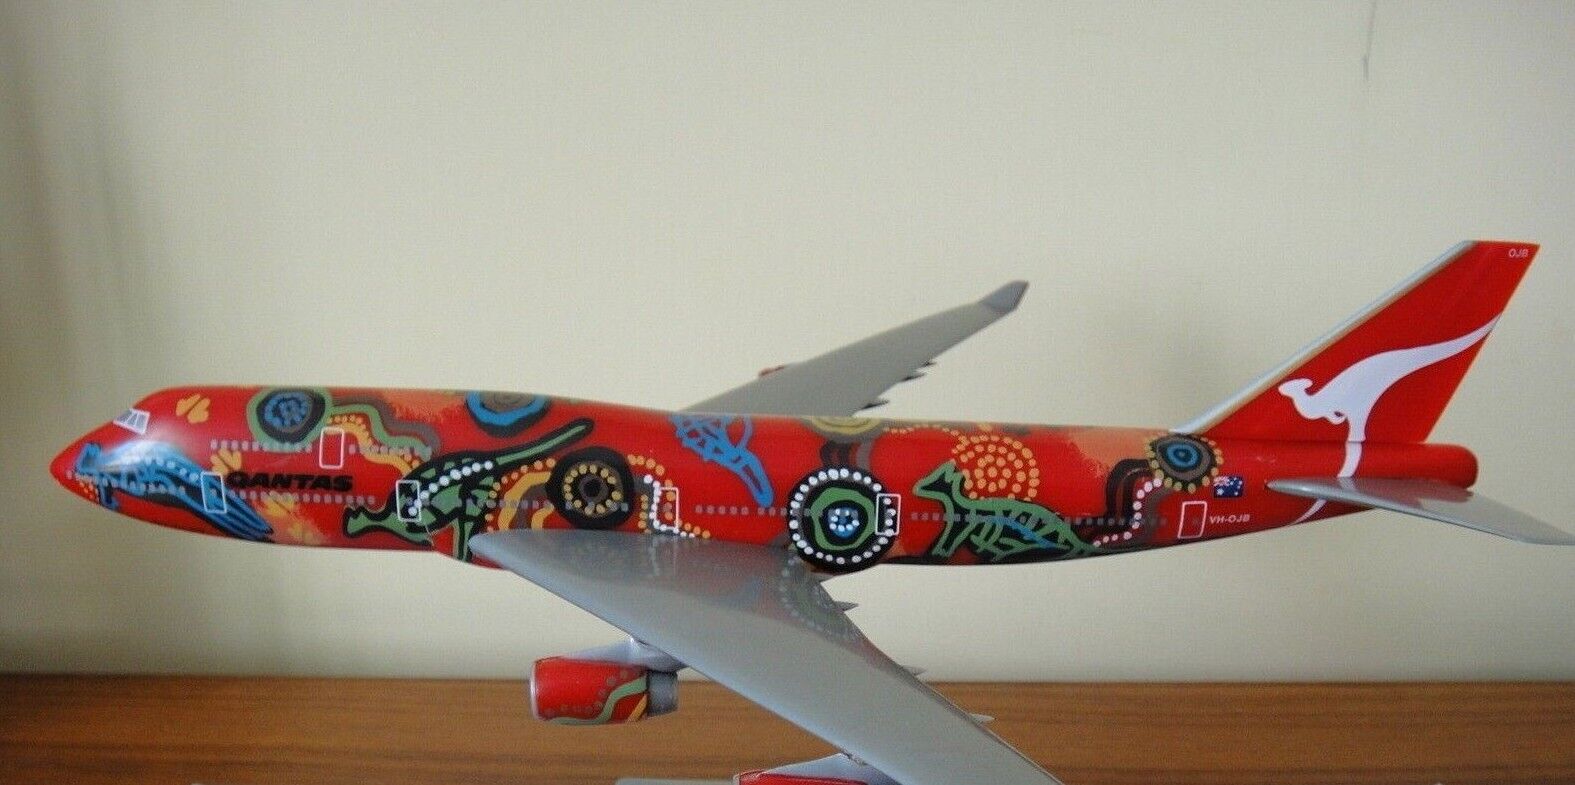 1/250 Qantas Wunala Dreaming Boeing B747-400 Airplane Model